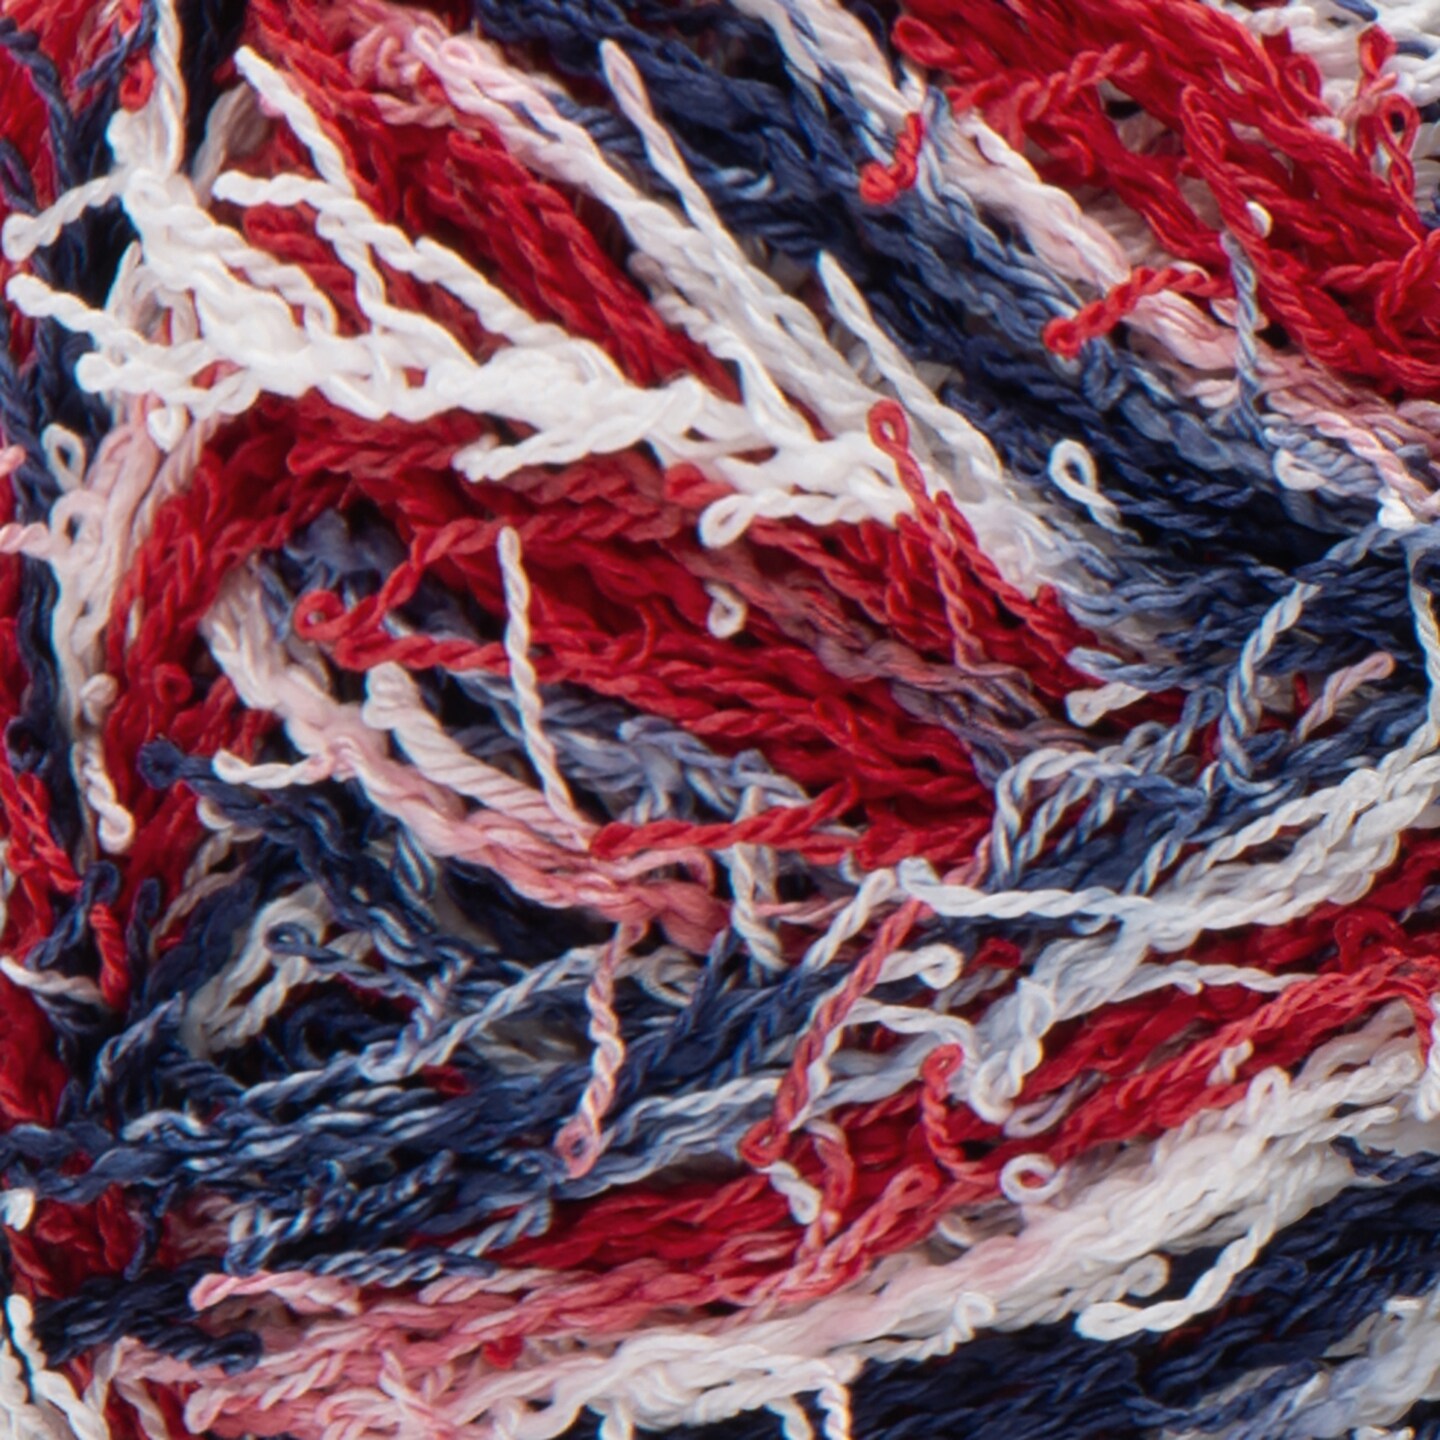 Scrubby Yarn, Red Heart Craft Yarn for Dishcloths & Crafts